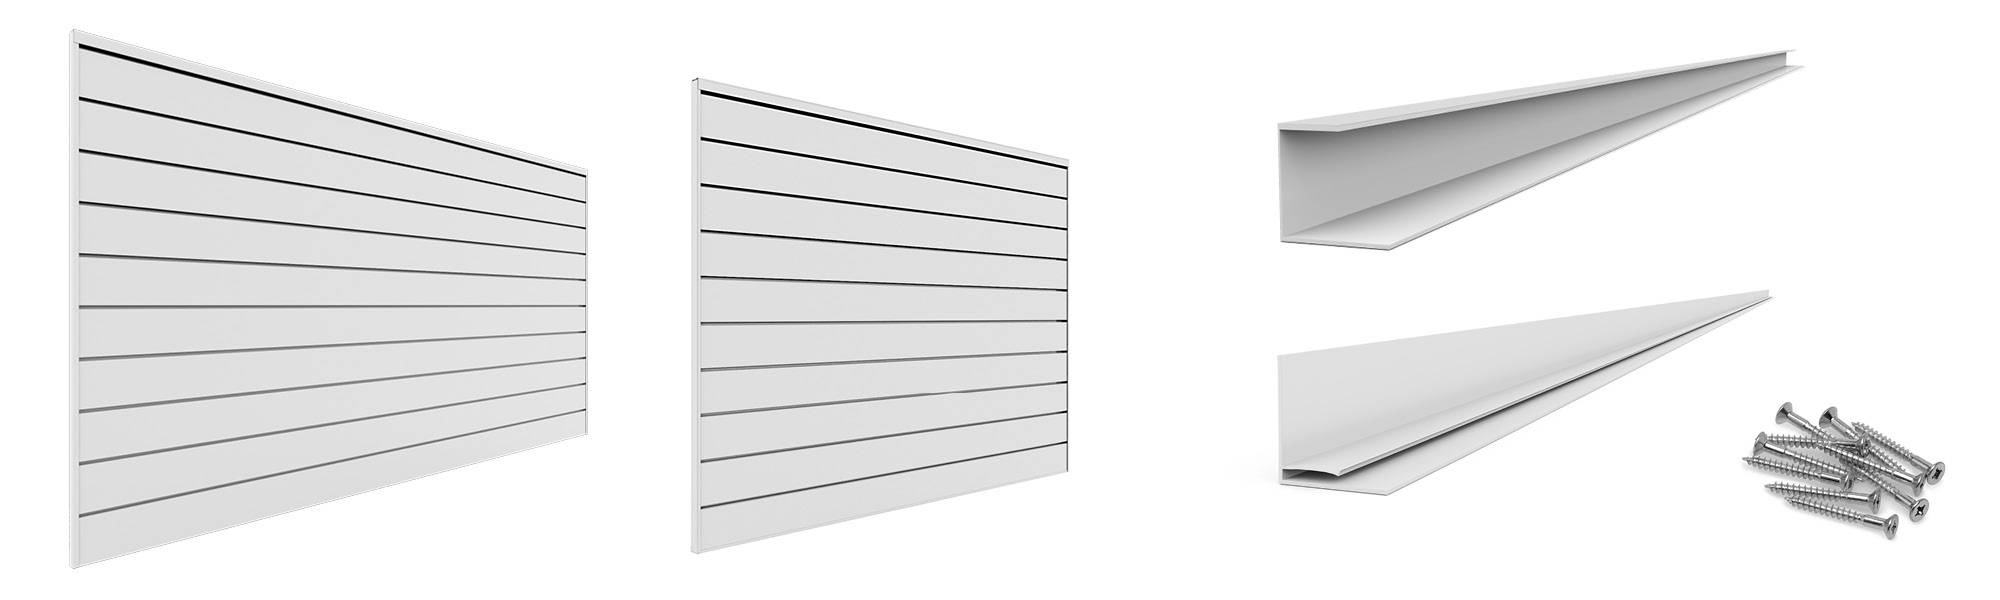 Panneaux de slatwall en PVC PROSLAT Garage Storage - 2 Packs de 8 ft. x 4  ft. Sections 20 lattes simples qui composent 64 pi2 une fois installé